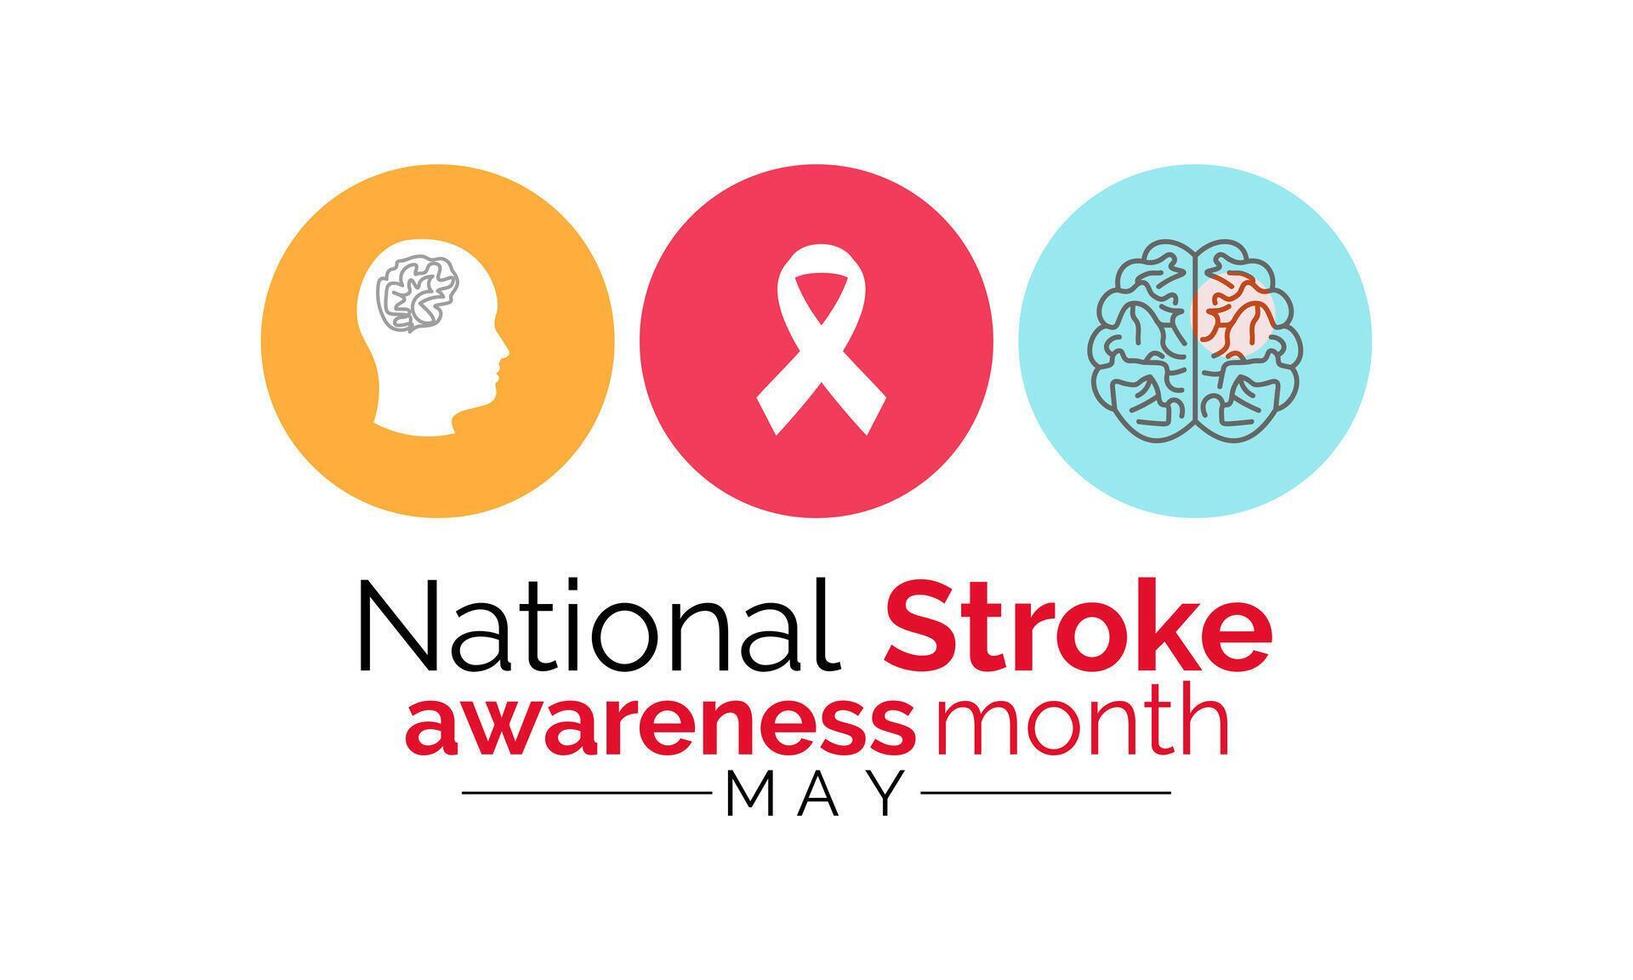 nationell stroke medvetenhet månad är observerats varje år under Maj. mall för bakgrund, baner, kort, affisch design. vektor eps10 illustration.